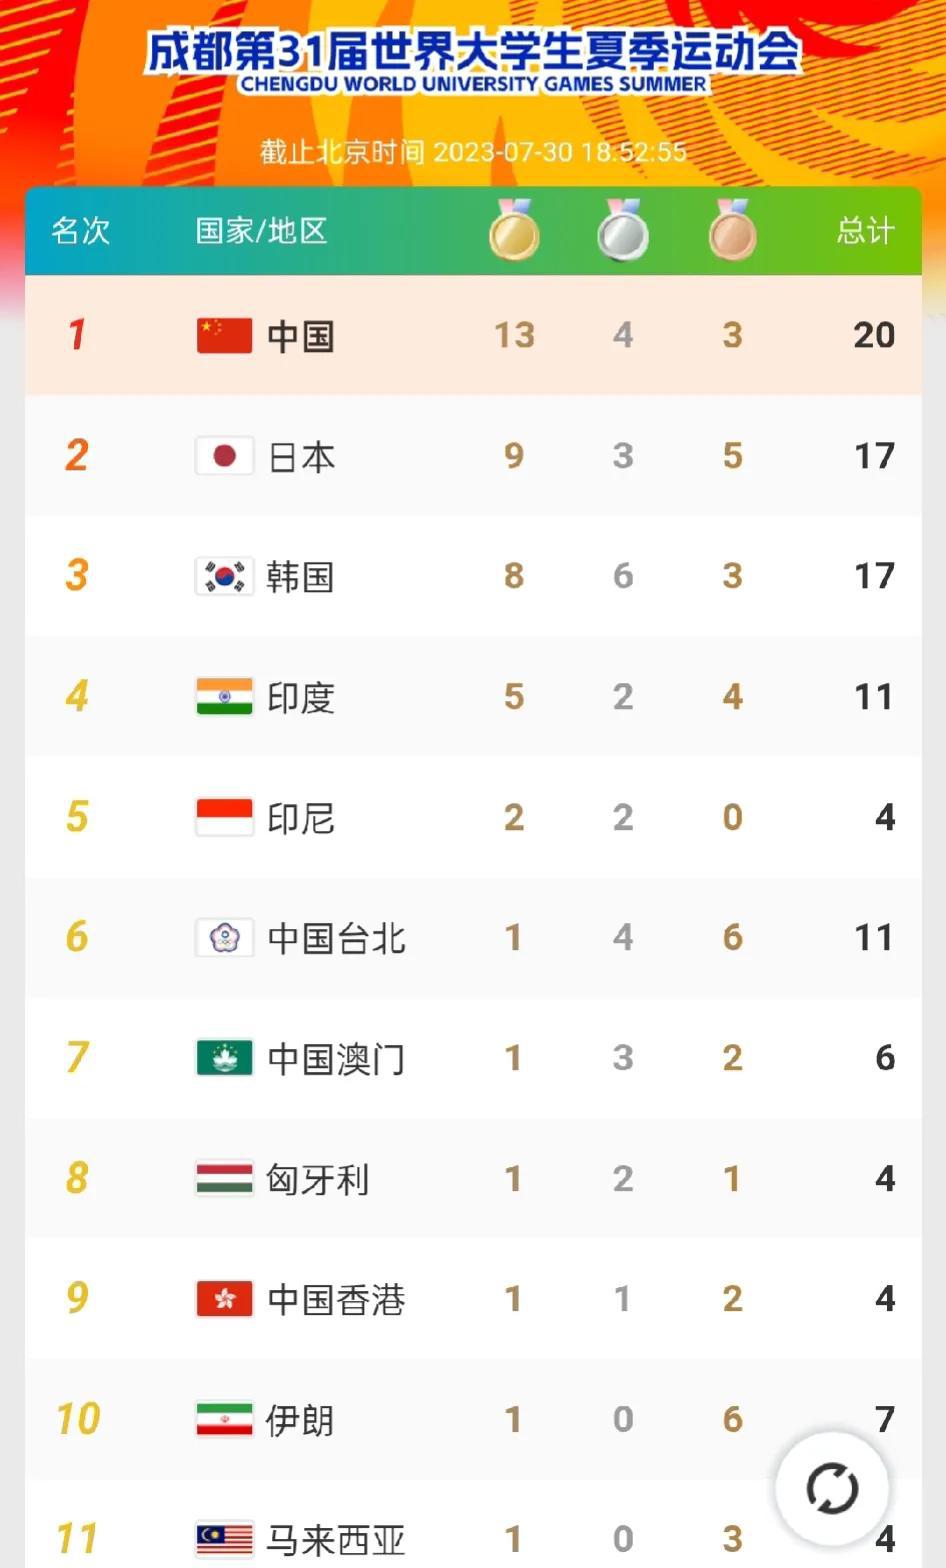 大运会最新奖牌榜，中国代表团夺回榜首

在大运会第二个比赛日中，中国代表团单日拿(1)